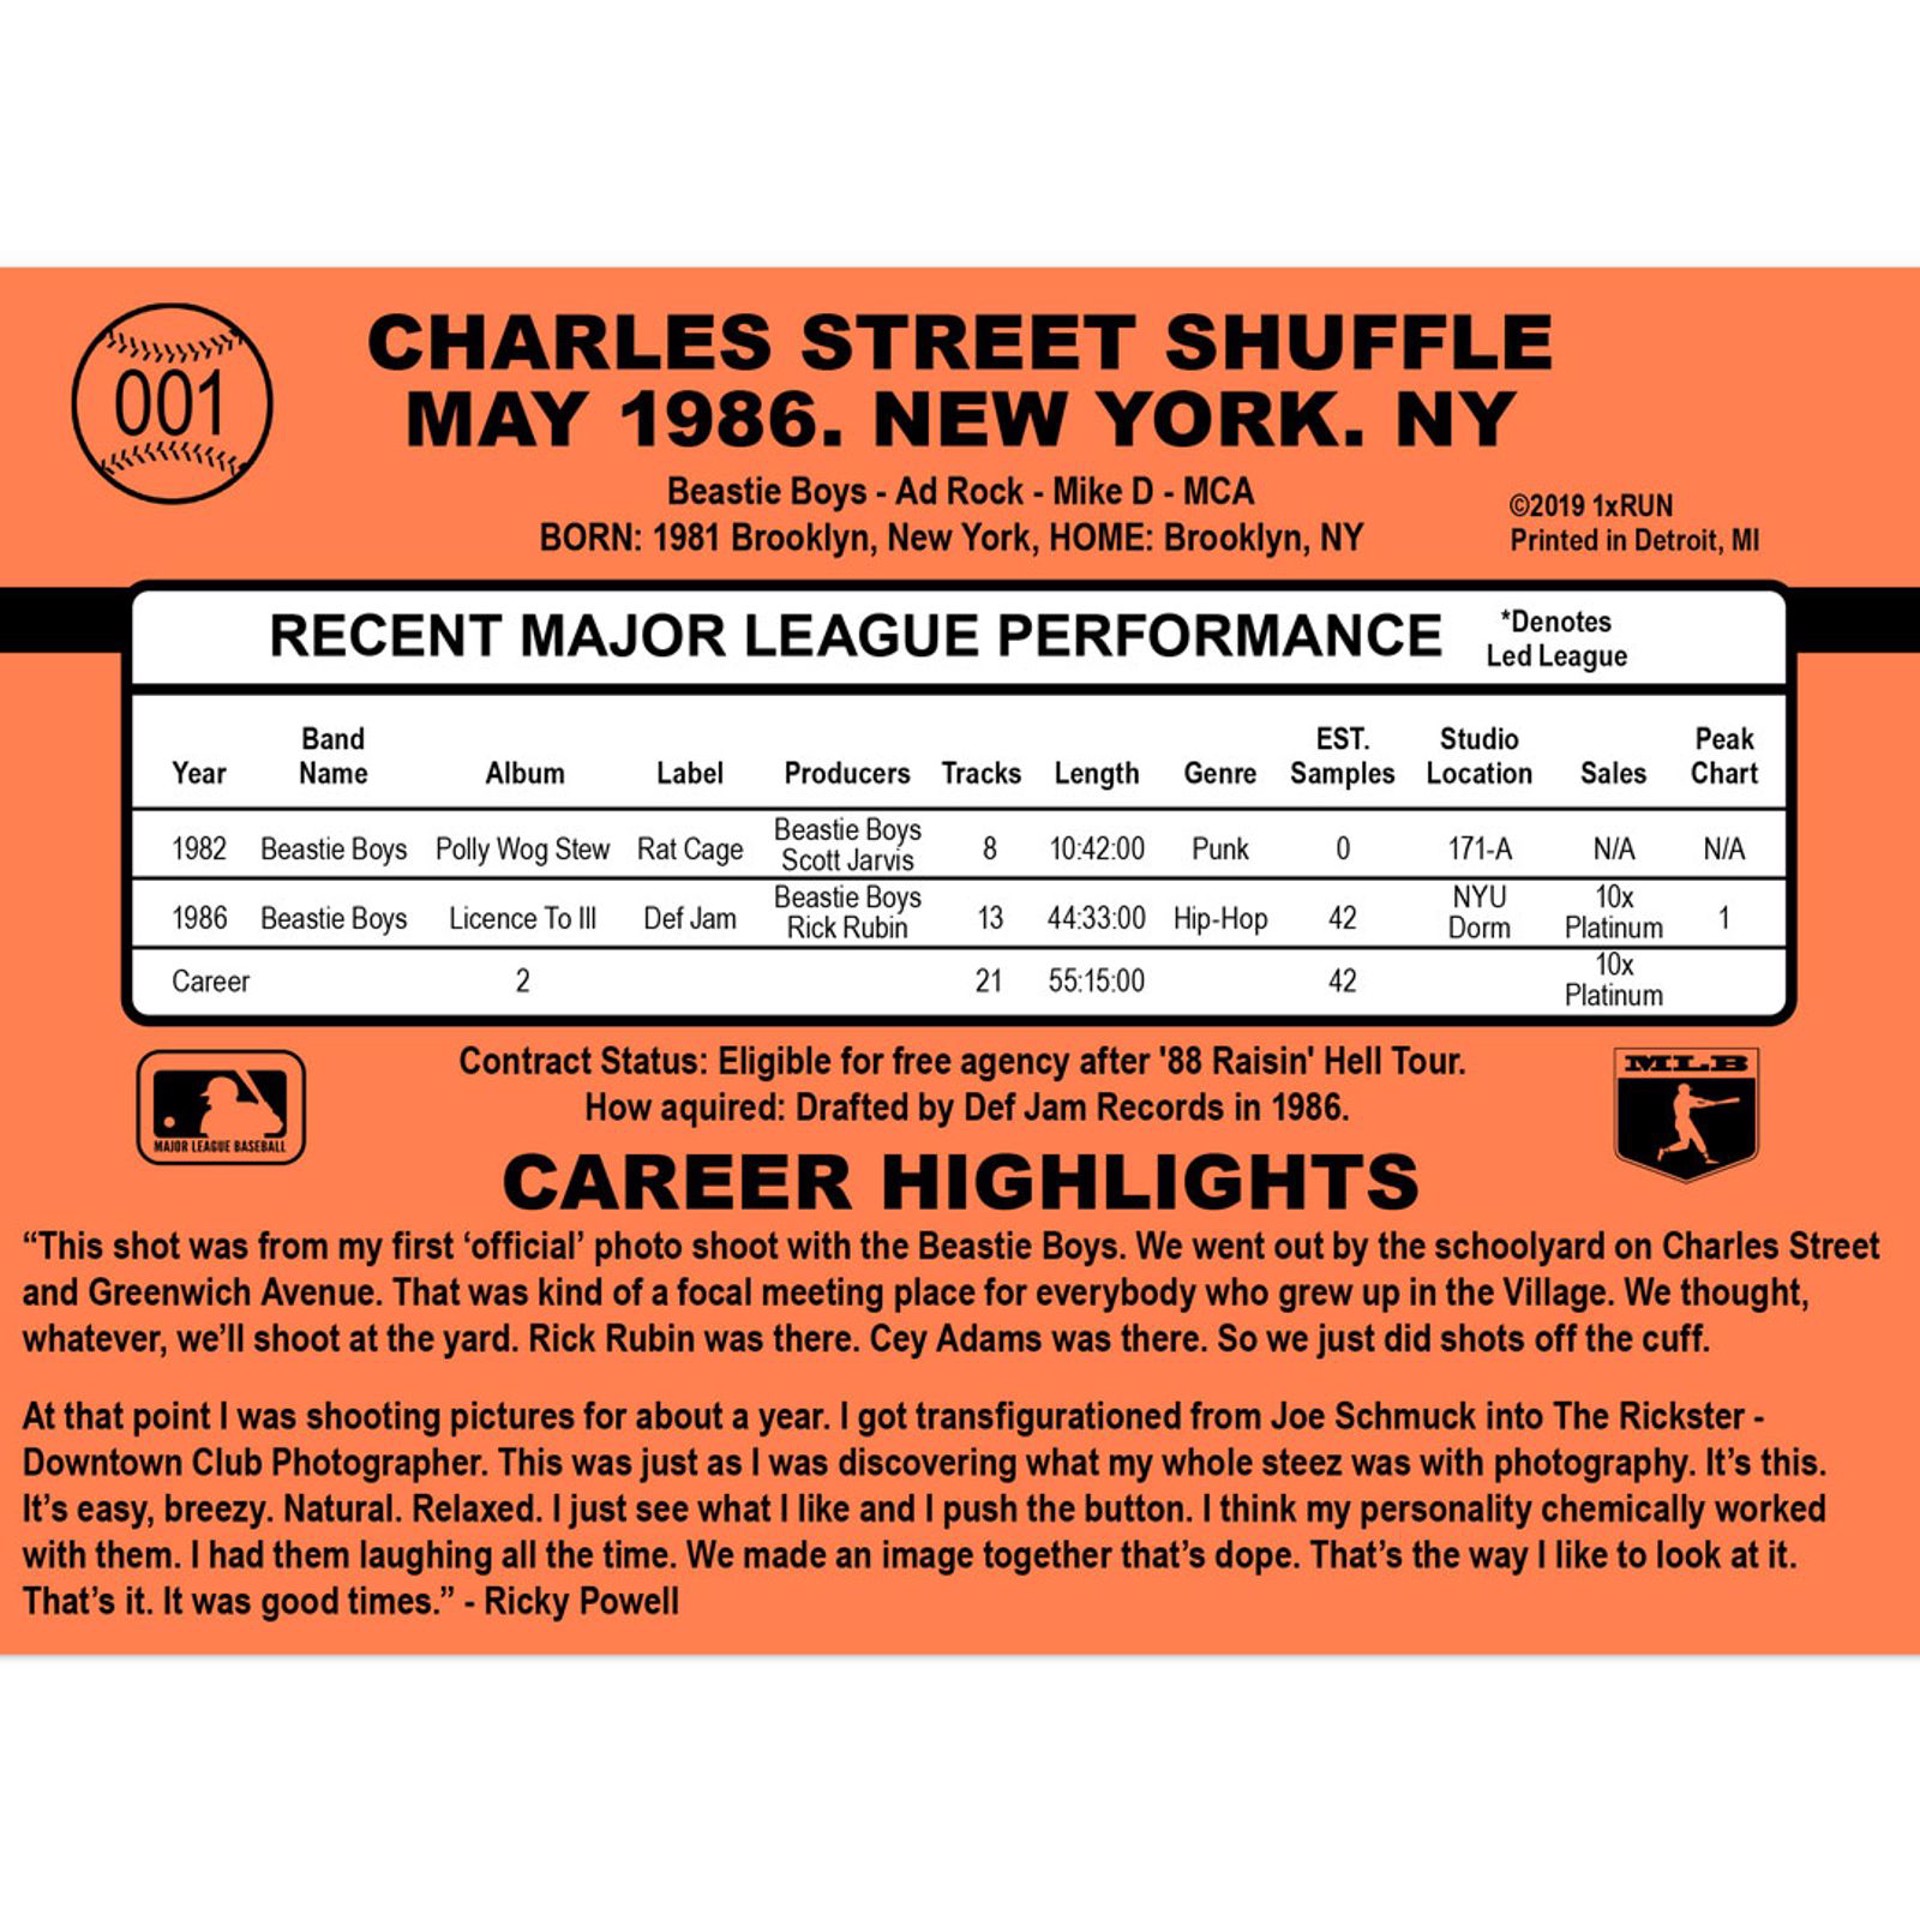 Charles Street Shuffle - May 1986 - New York, NY - Grand Slam Edition - Yankees Variant by Ricky Powell